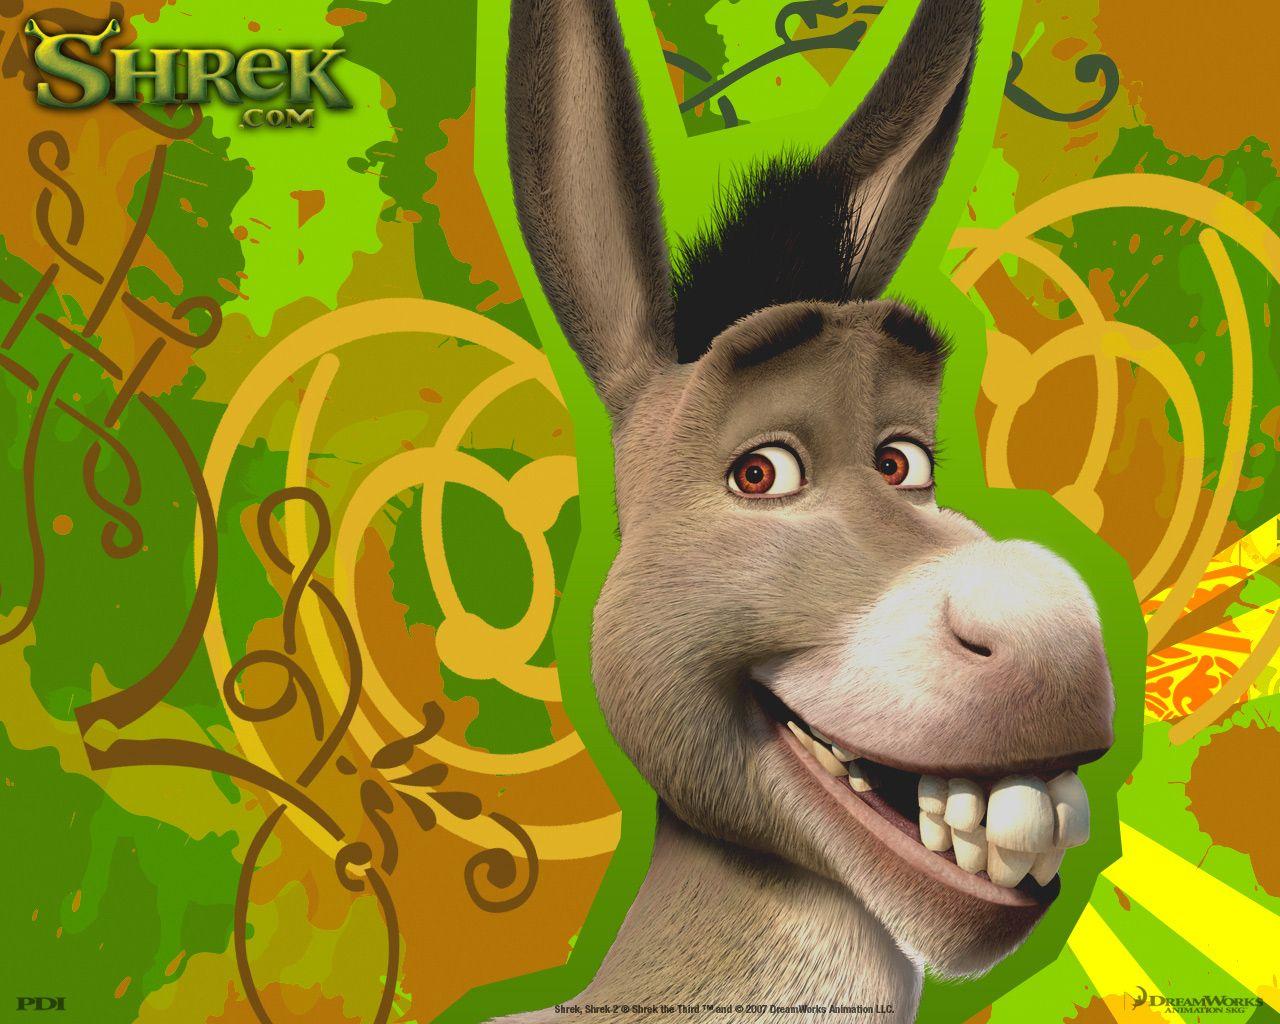 Shrek the Third. Donkey in shrek, Shrek, Shrek donkey